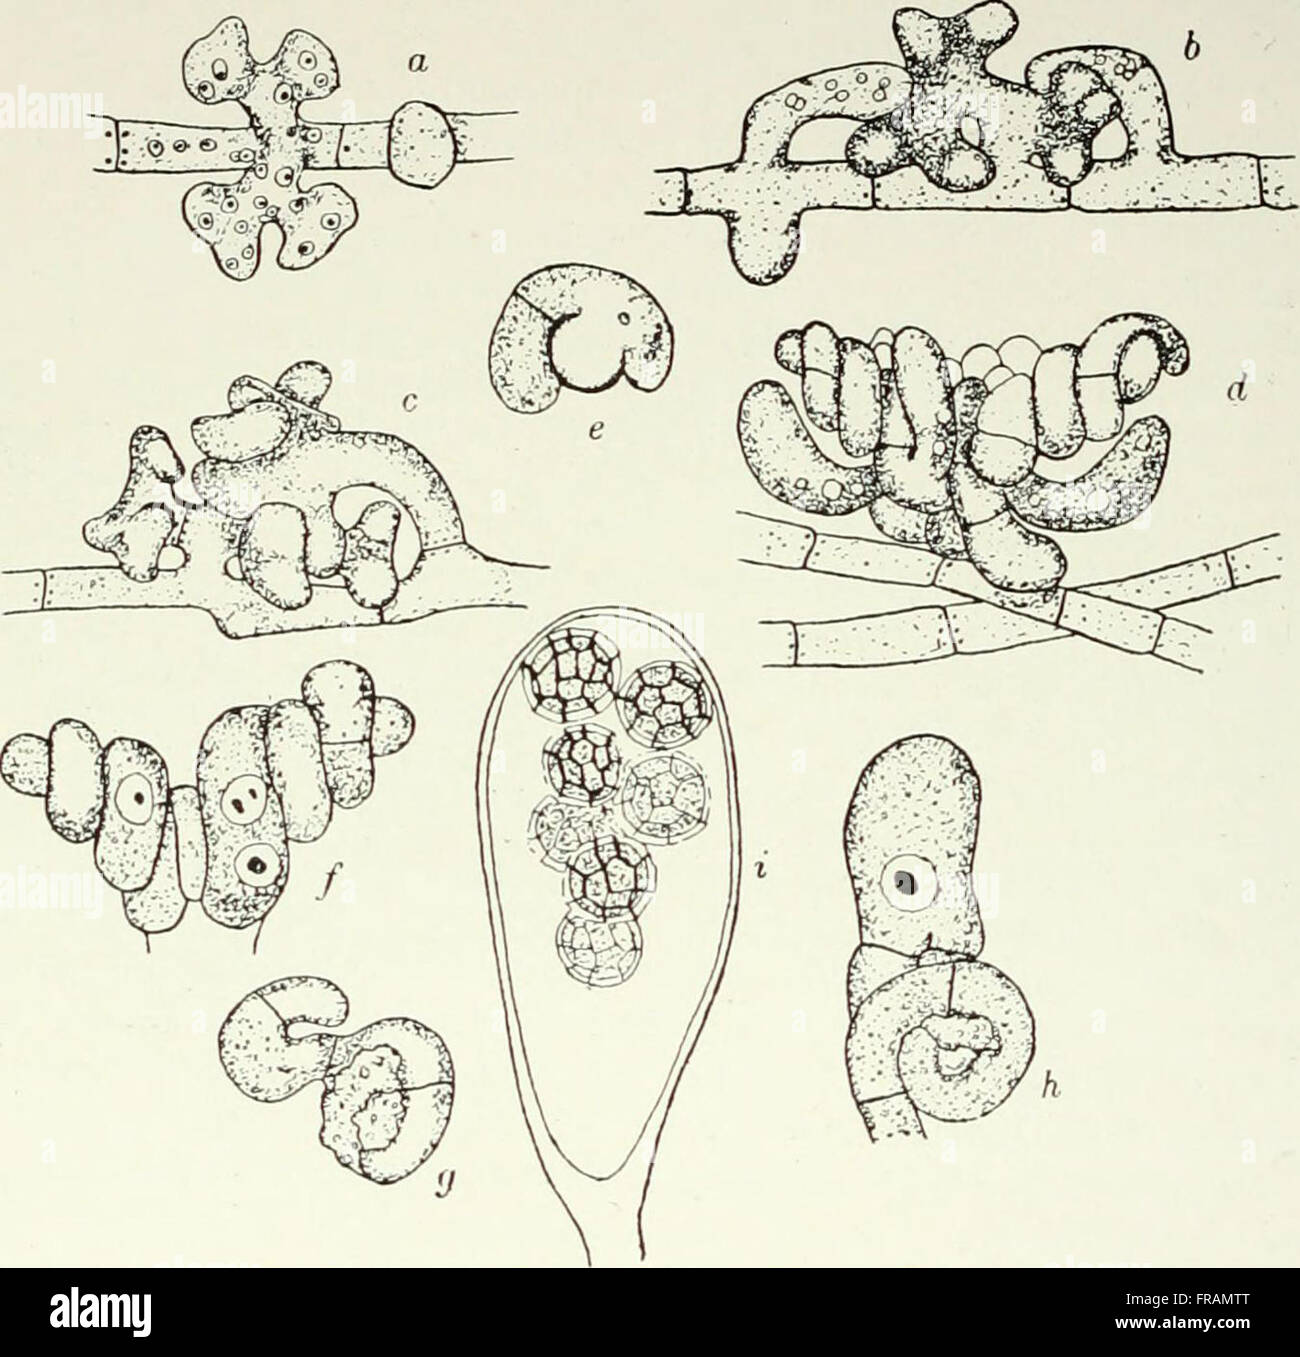 Fungi, Ascomycetes, Ustilaginales, Uredinales (1922) Stock Photo